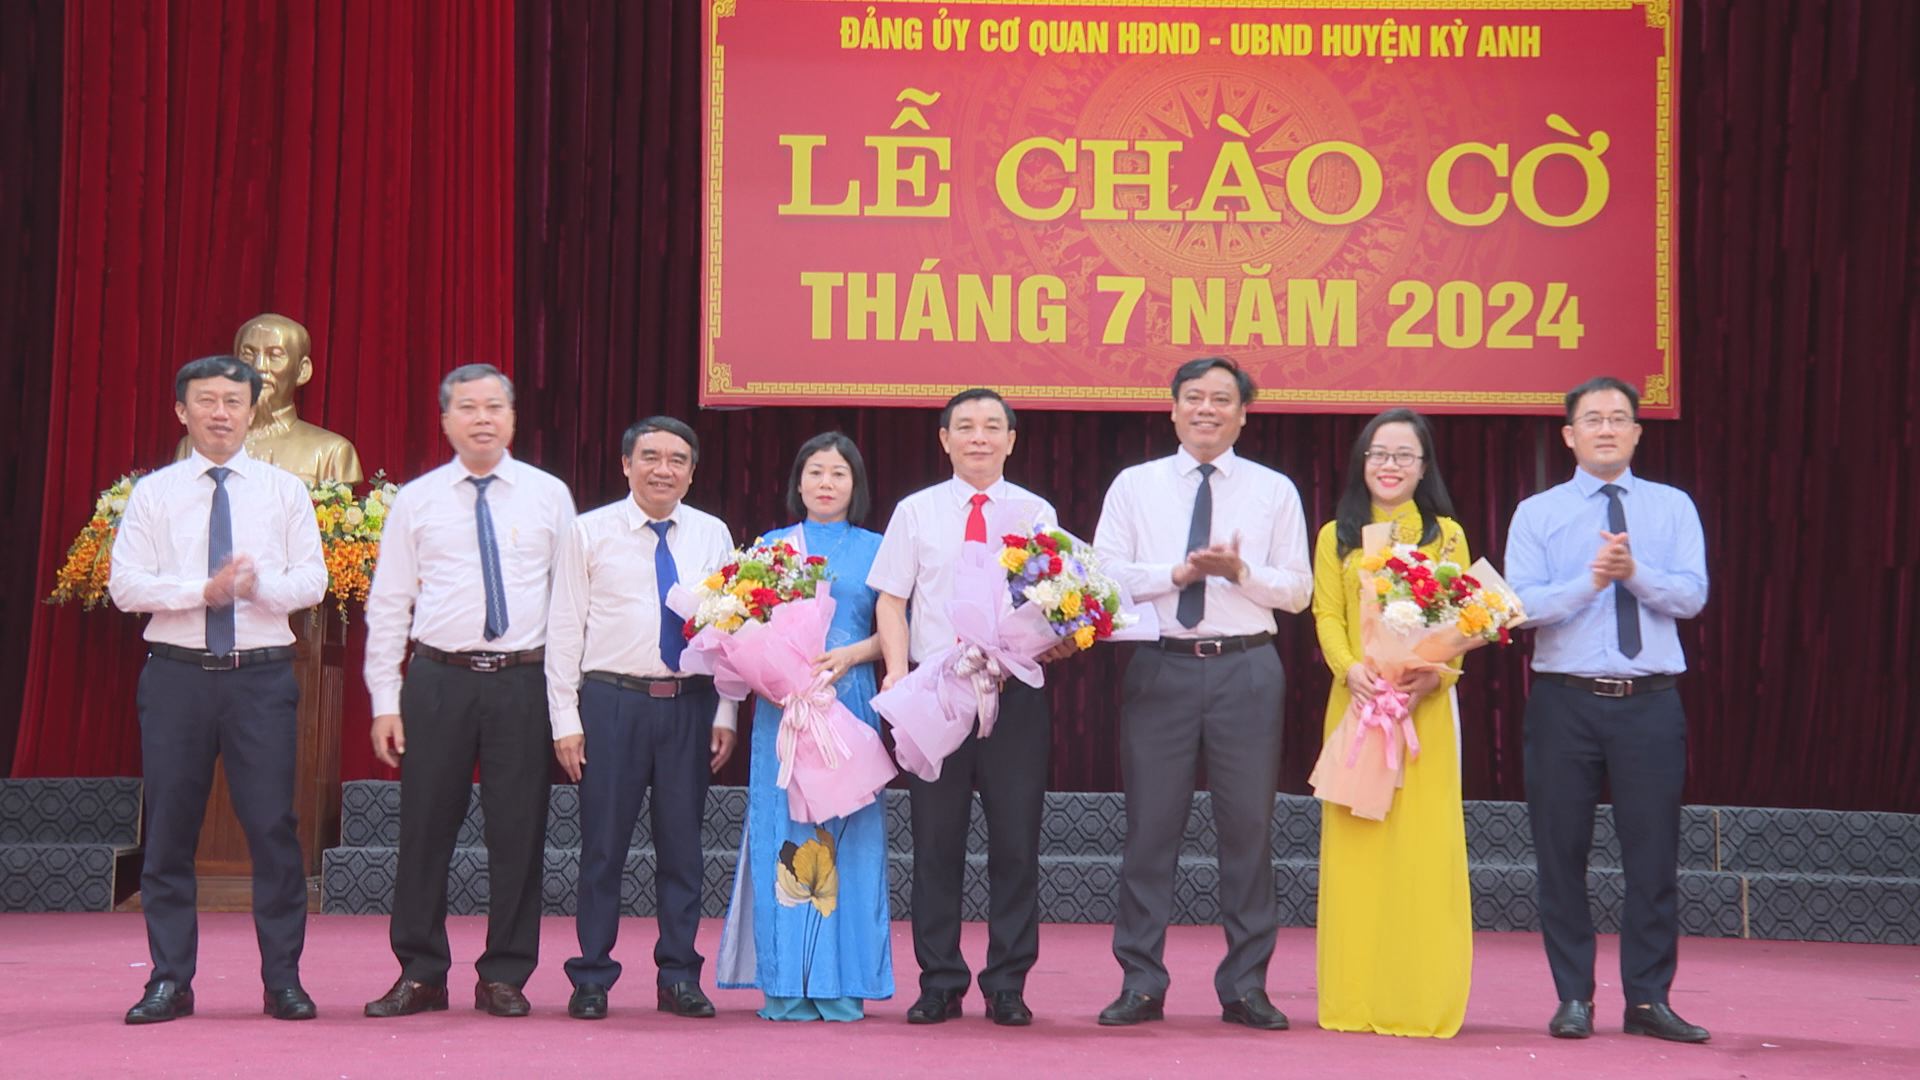 Đảng bộ Cơ quan Huyện ủy, HĐND - UBND, Chi bộ Khối dân huyện tổ chức lễ chào cờ tháng 7